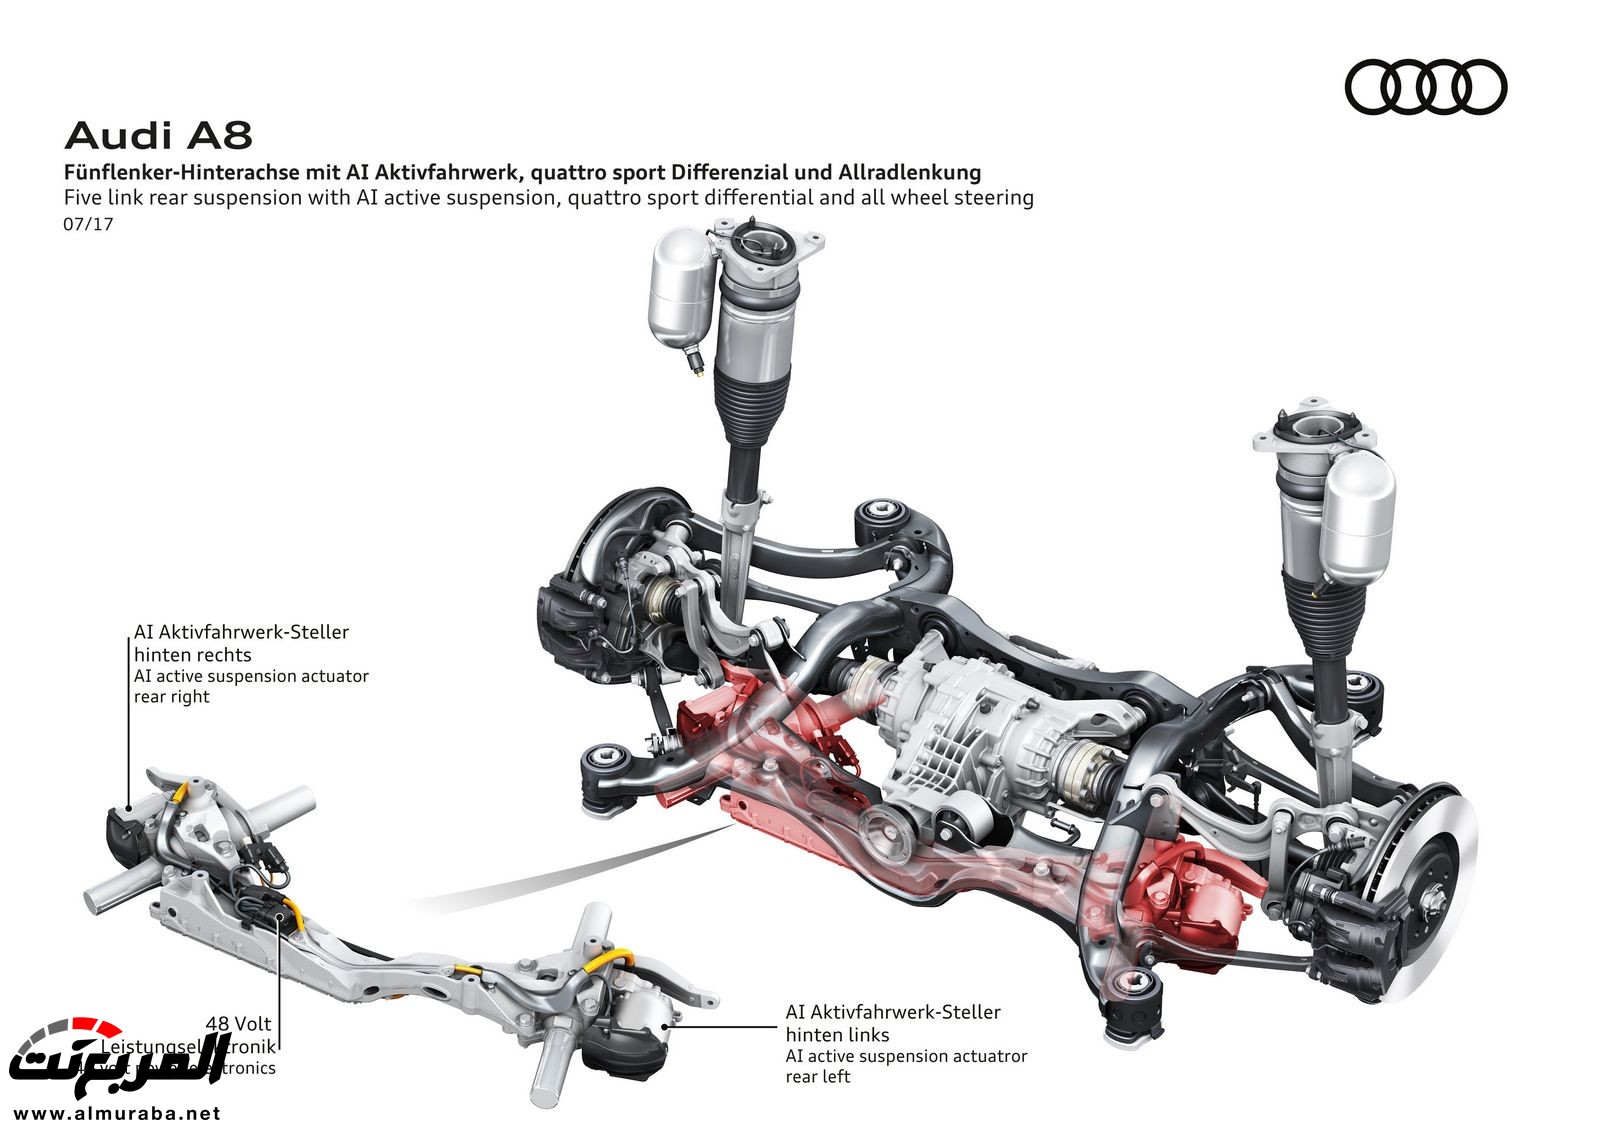 أودي A8 2018 الجديدة كلياً تكشف نفسها بتصميم وتقنيات متطورة "معلومات + 100 صورة" Audi A8 90